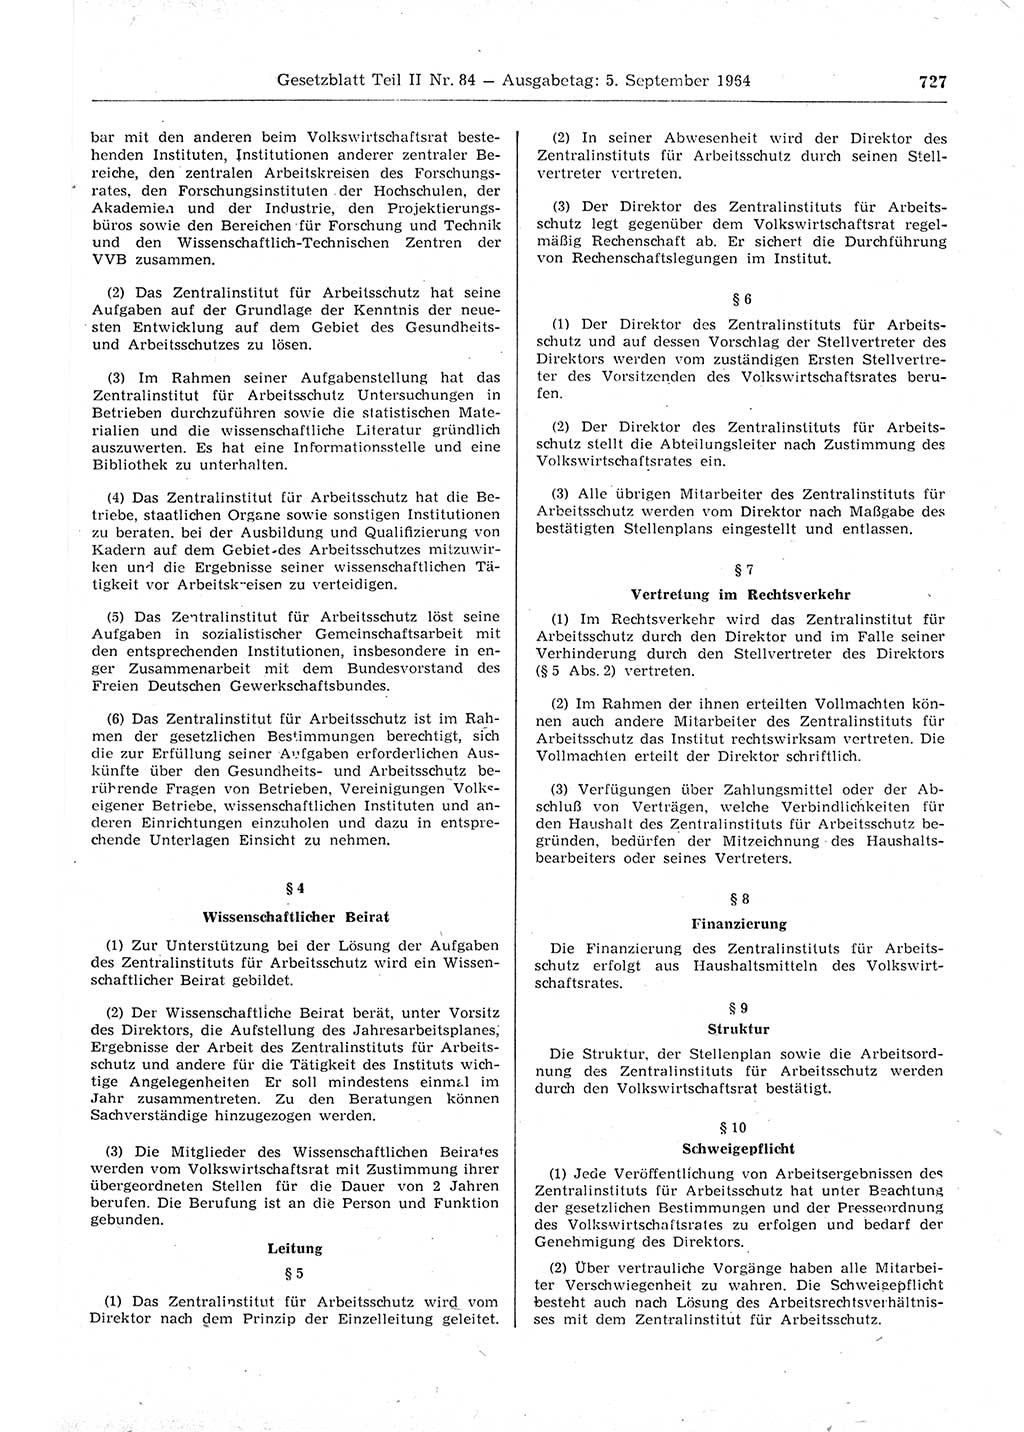 Gesetzblatt (GBl.) der Deutschen Demokratischen Republik (DDR) Teil ⅠⅠ 1964, Seite 727 (GBl. DDR ⅠⅠ 1964, S. 727)